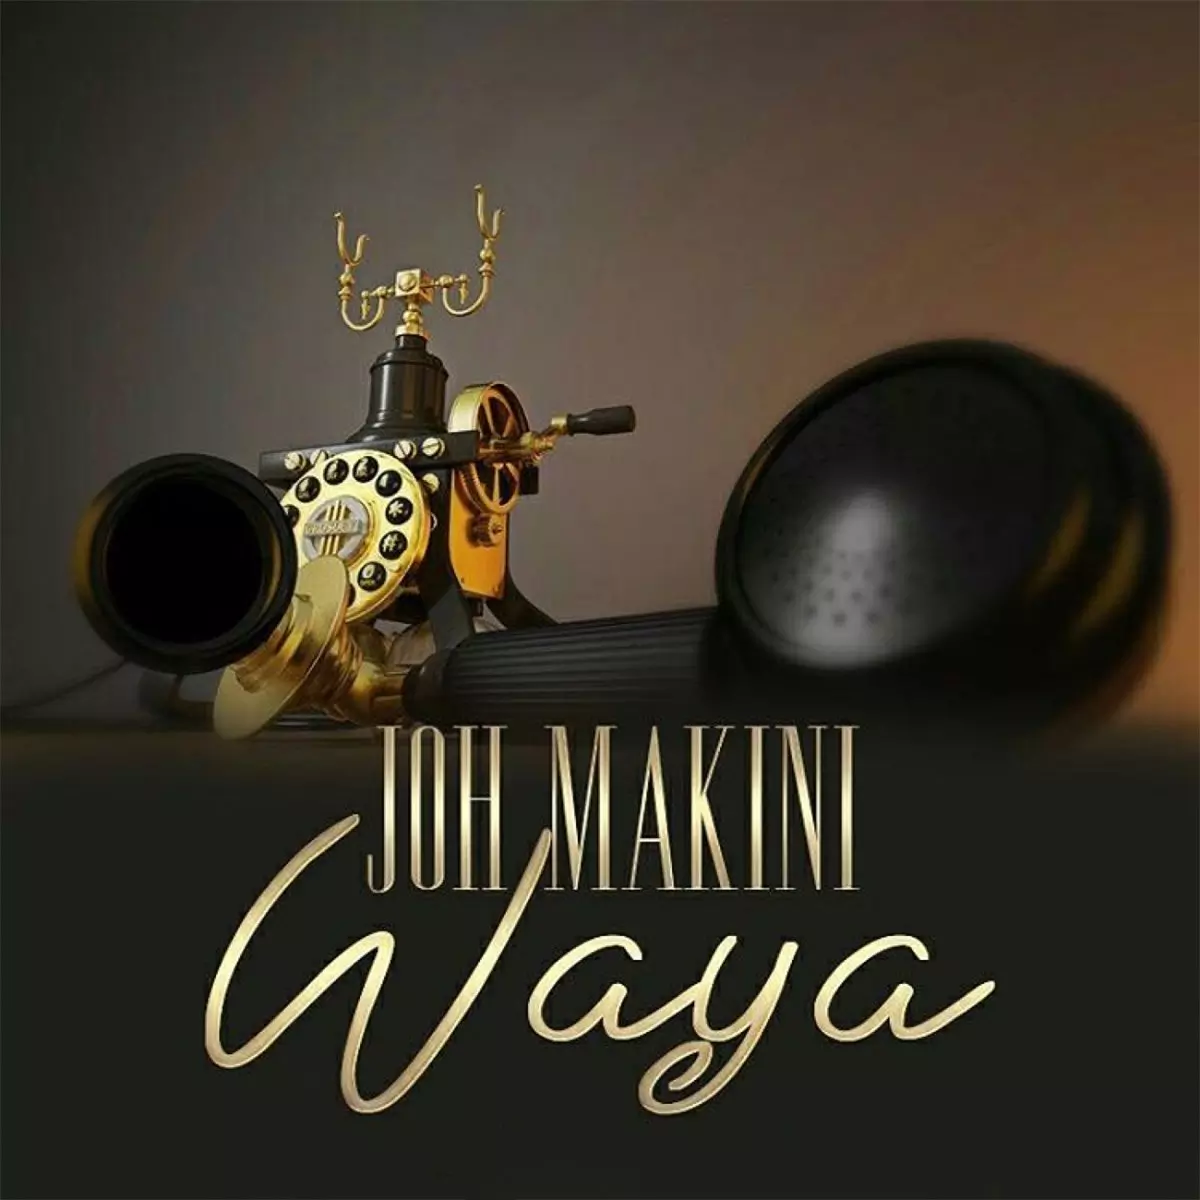 Waya - Single by Joh Makini on Apple Music